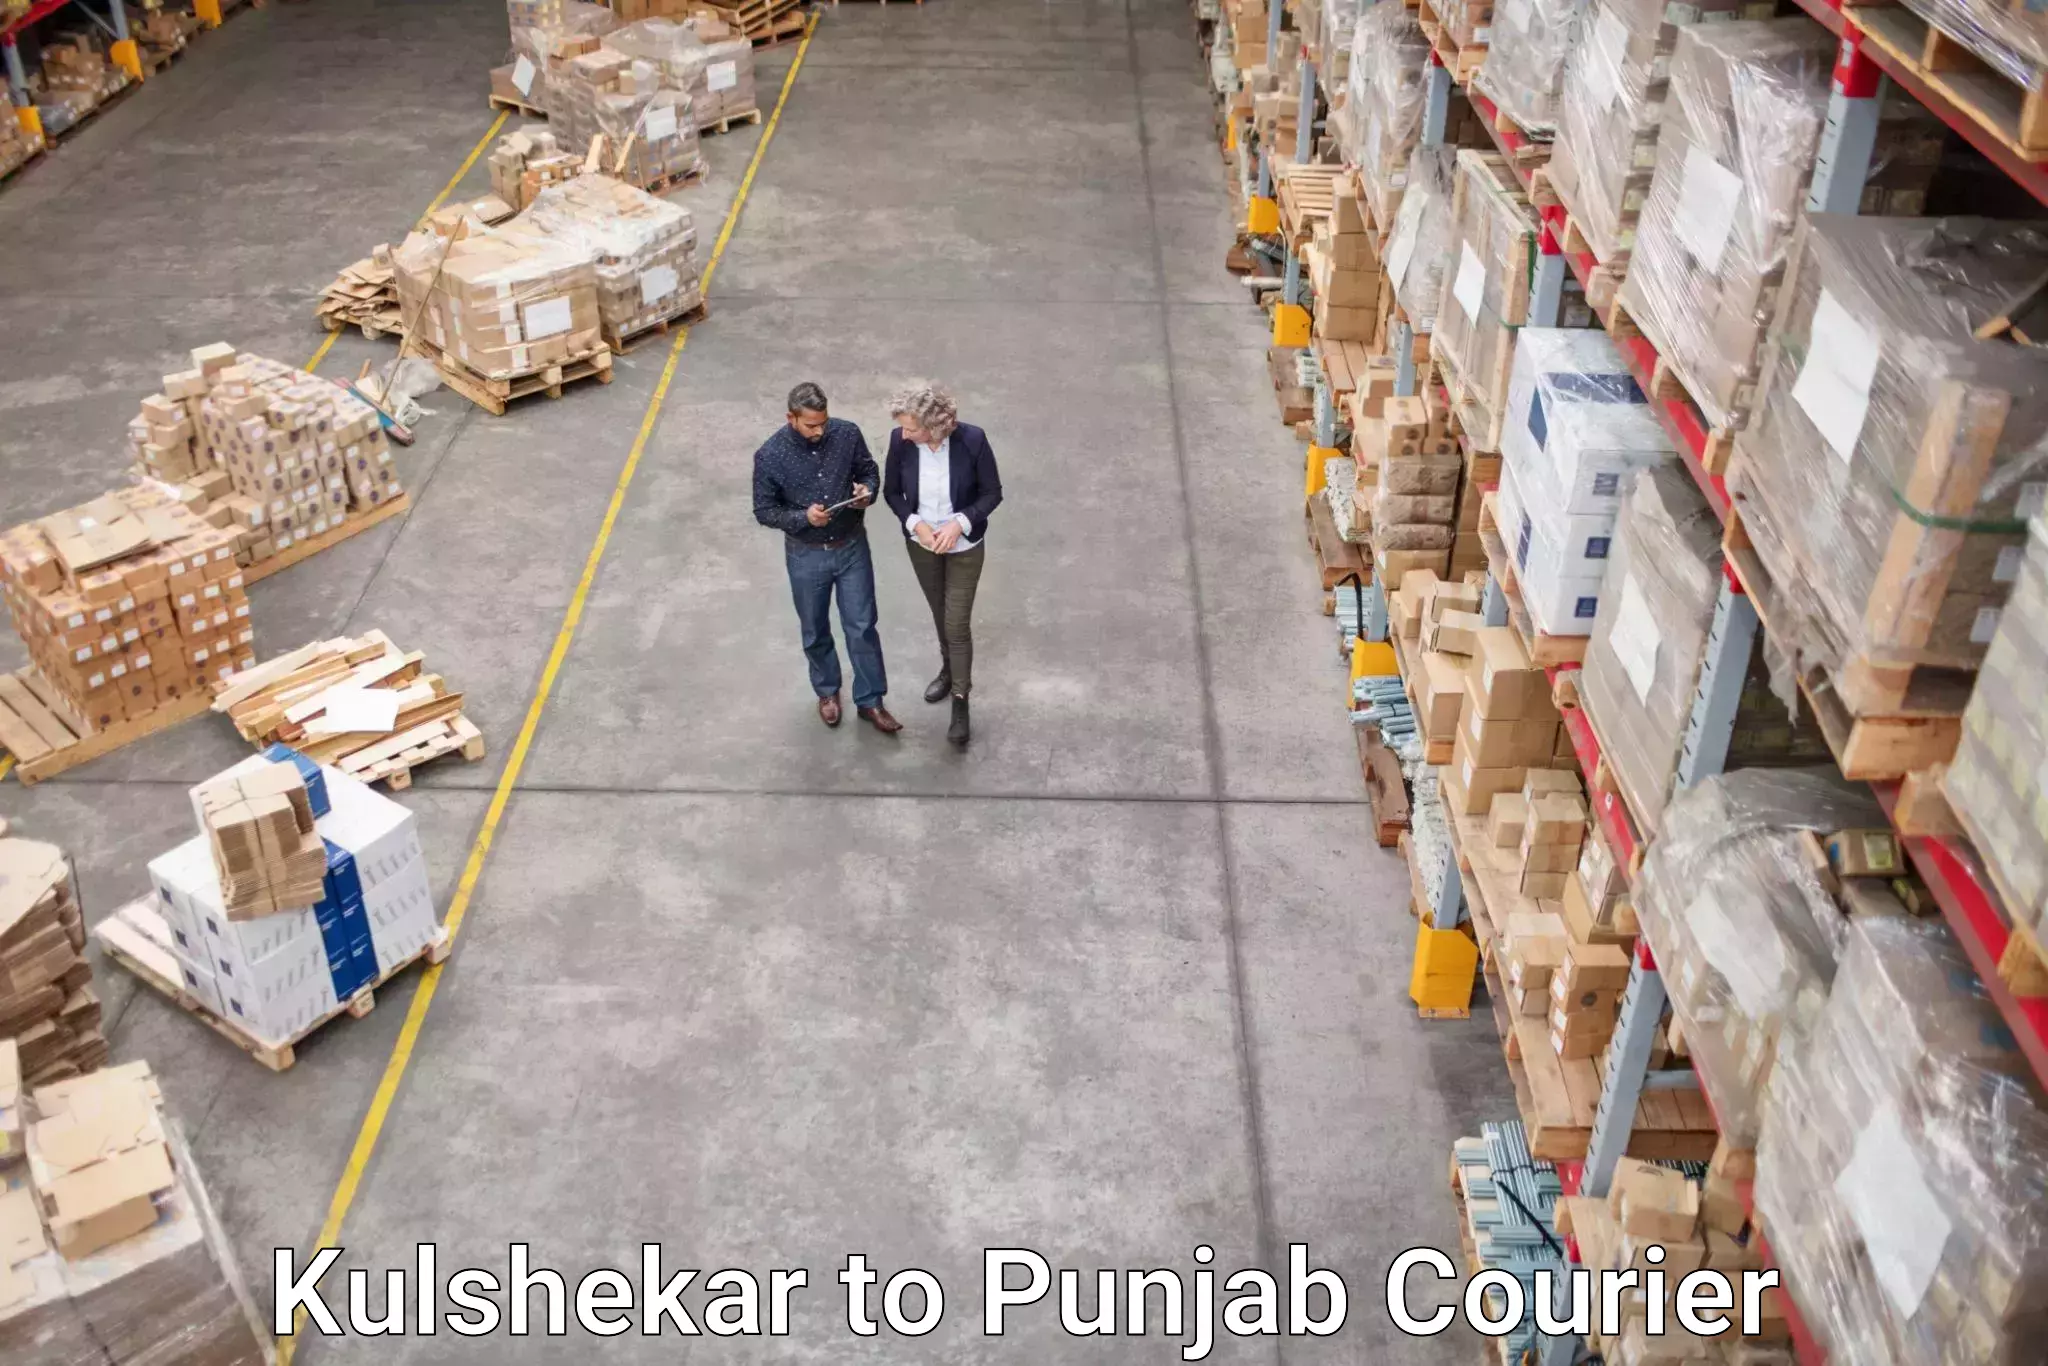 Efficient parcel transport Kulshekar to Amritsar